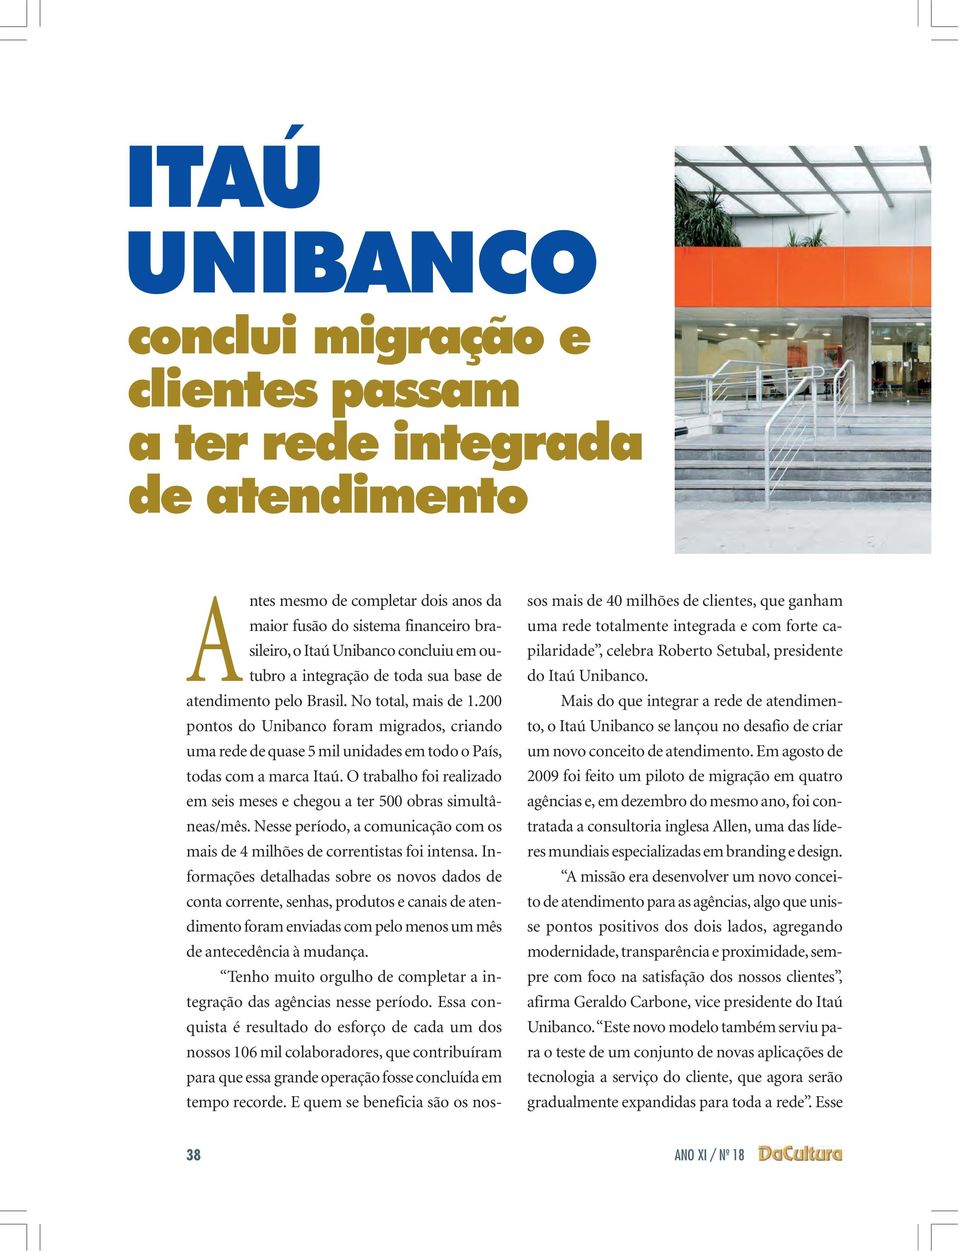 200 pontos do Unibanco foram migrados, criando uma rede de quase 5 mil unidades em todo o País, todas com a marca Itaú. O trabalho foi realizado em seis meses e chegou a ter 500 obras simultâneas/mês.